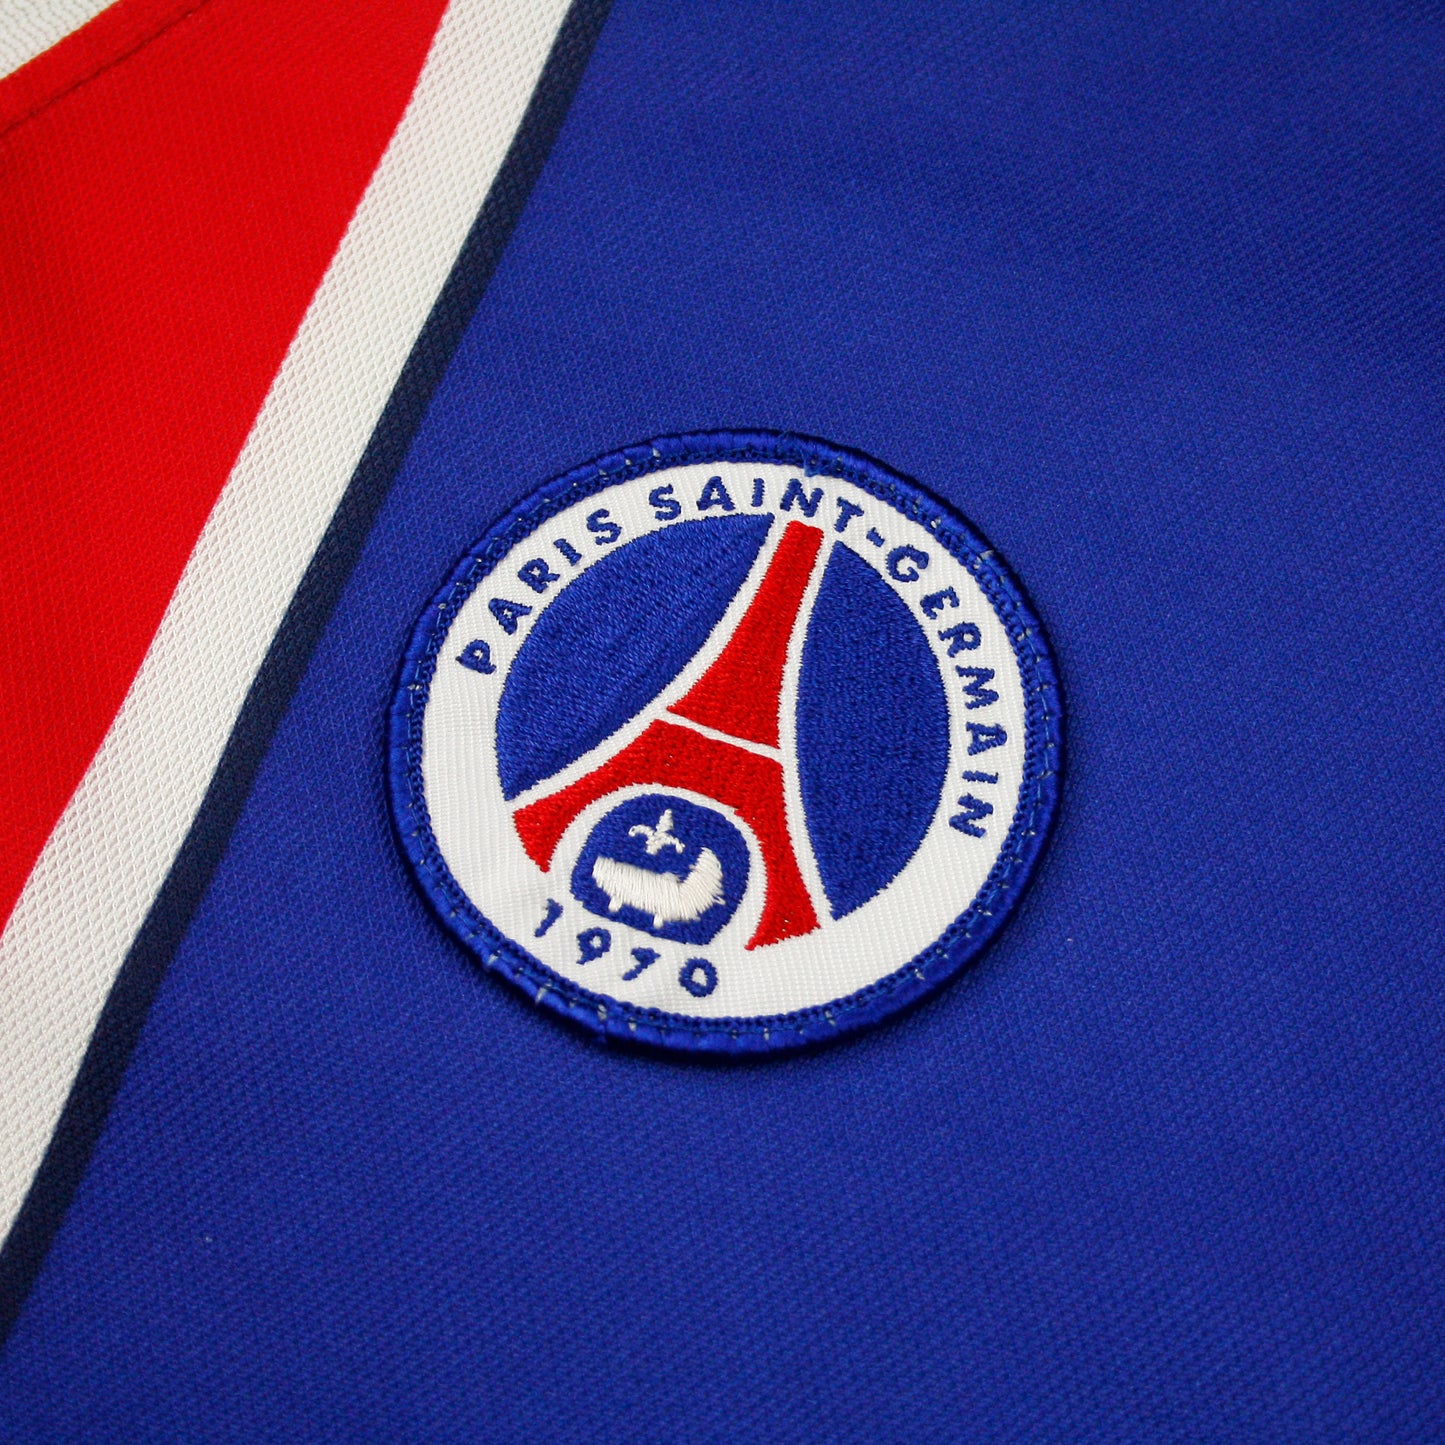 Paris Saint-Germain 97/98 • Camiseta Local • XL